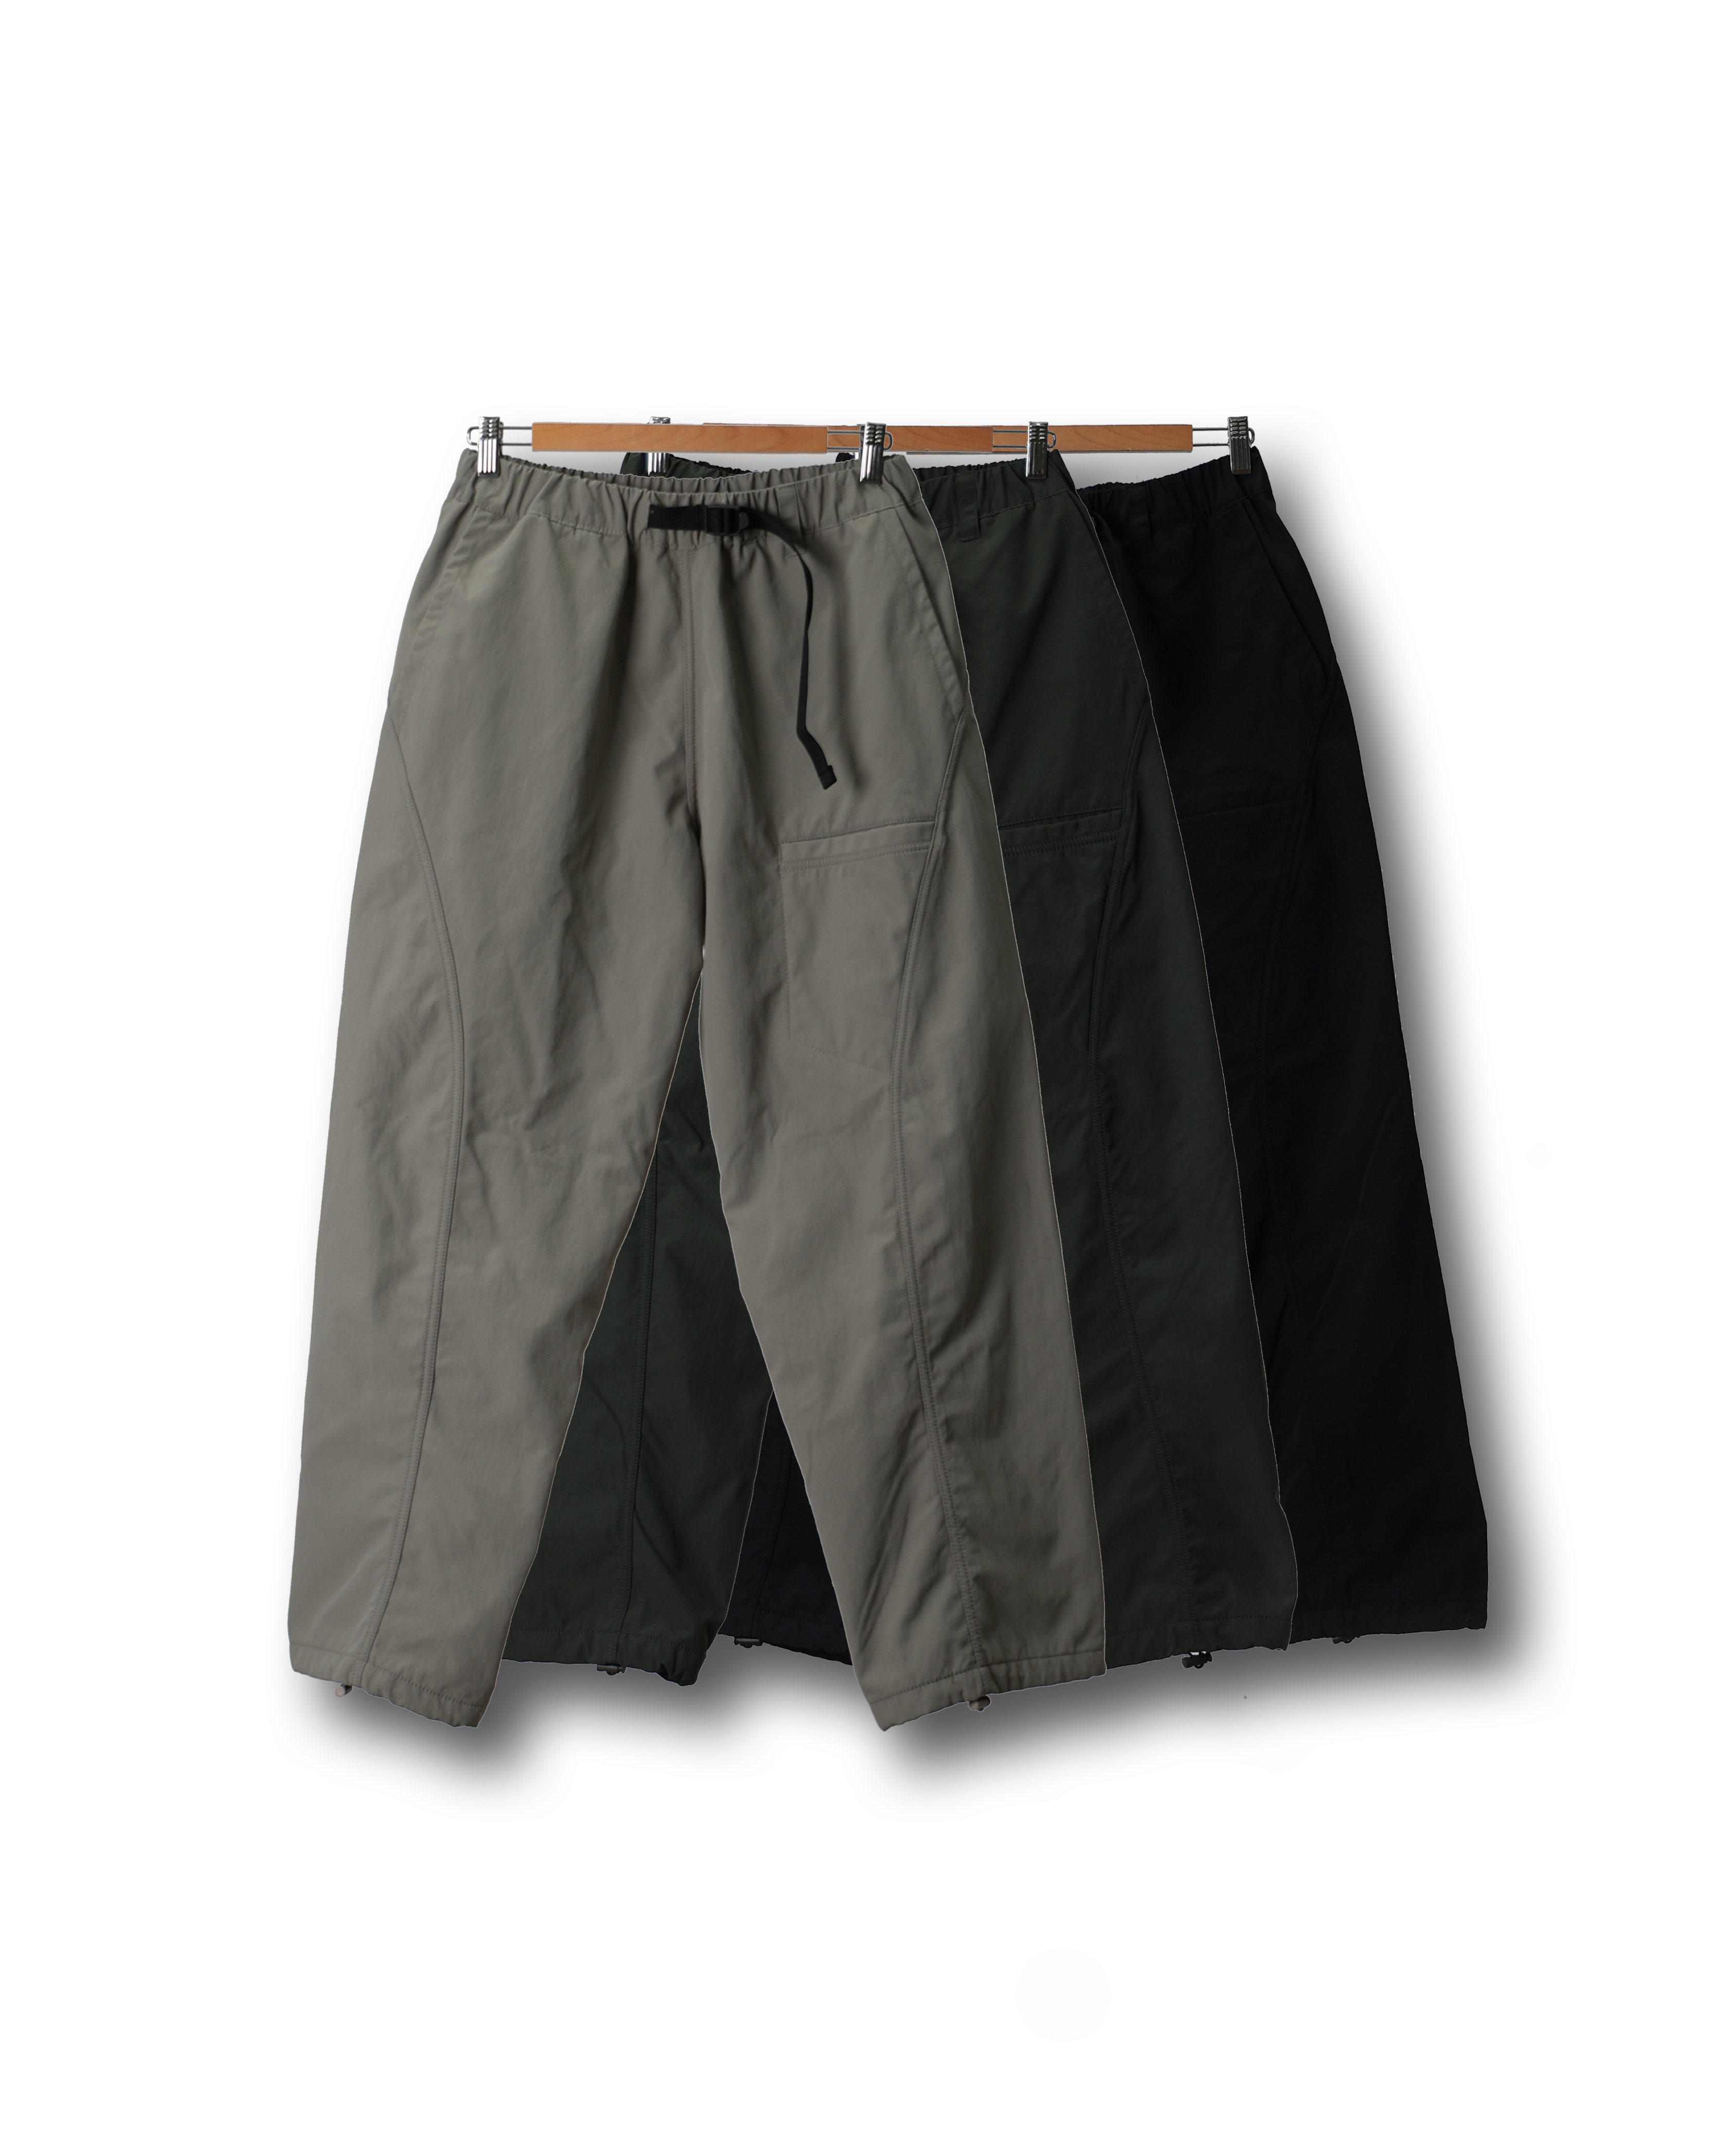 PECTOR Winter Curve Bonding Belted Pants (Black/Olive/Beige Gray)